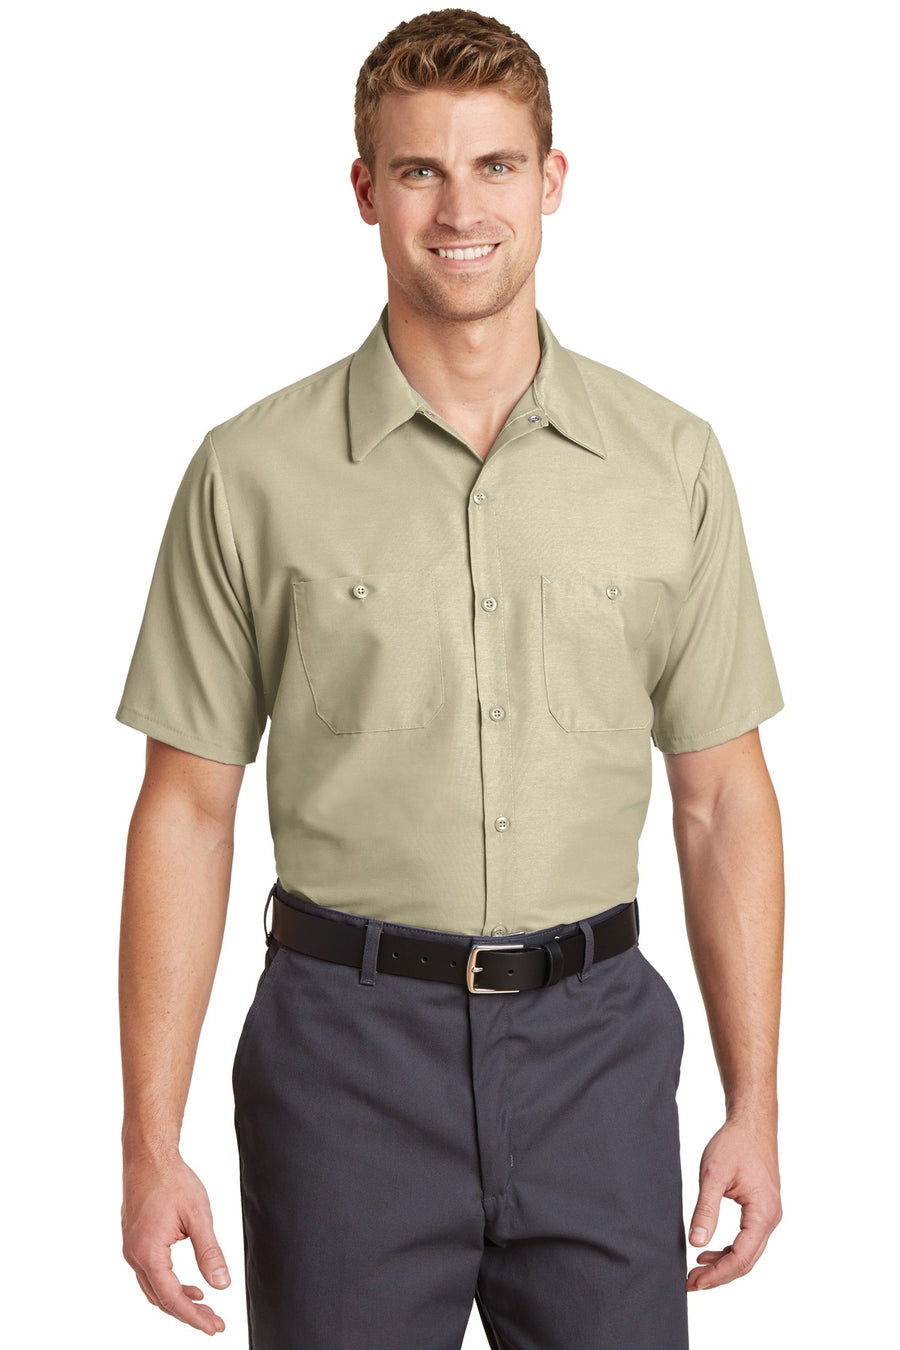 Red Kap Short Sleeve Industrial Work Shirt.